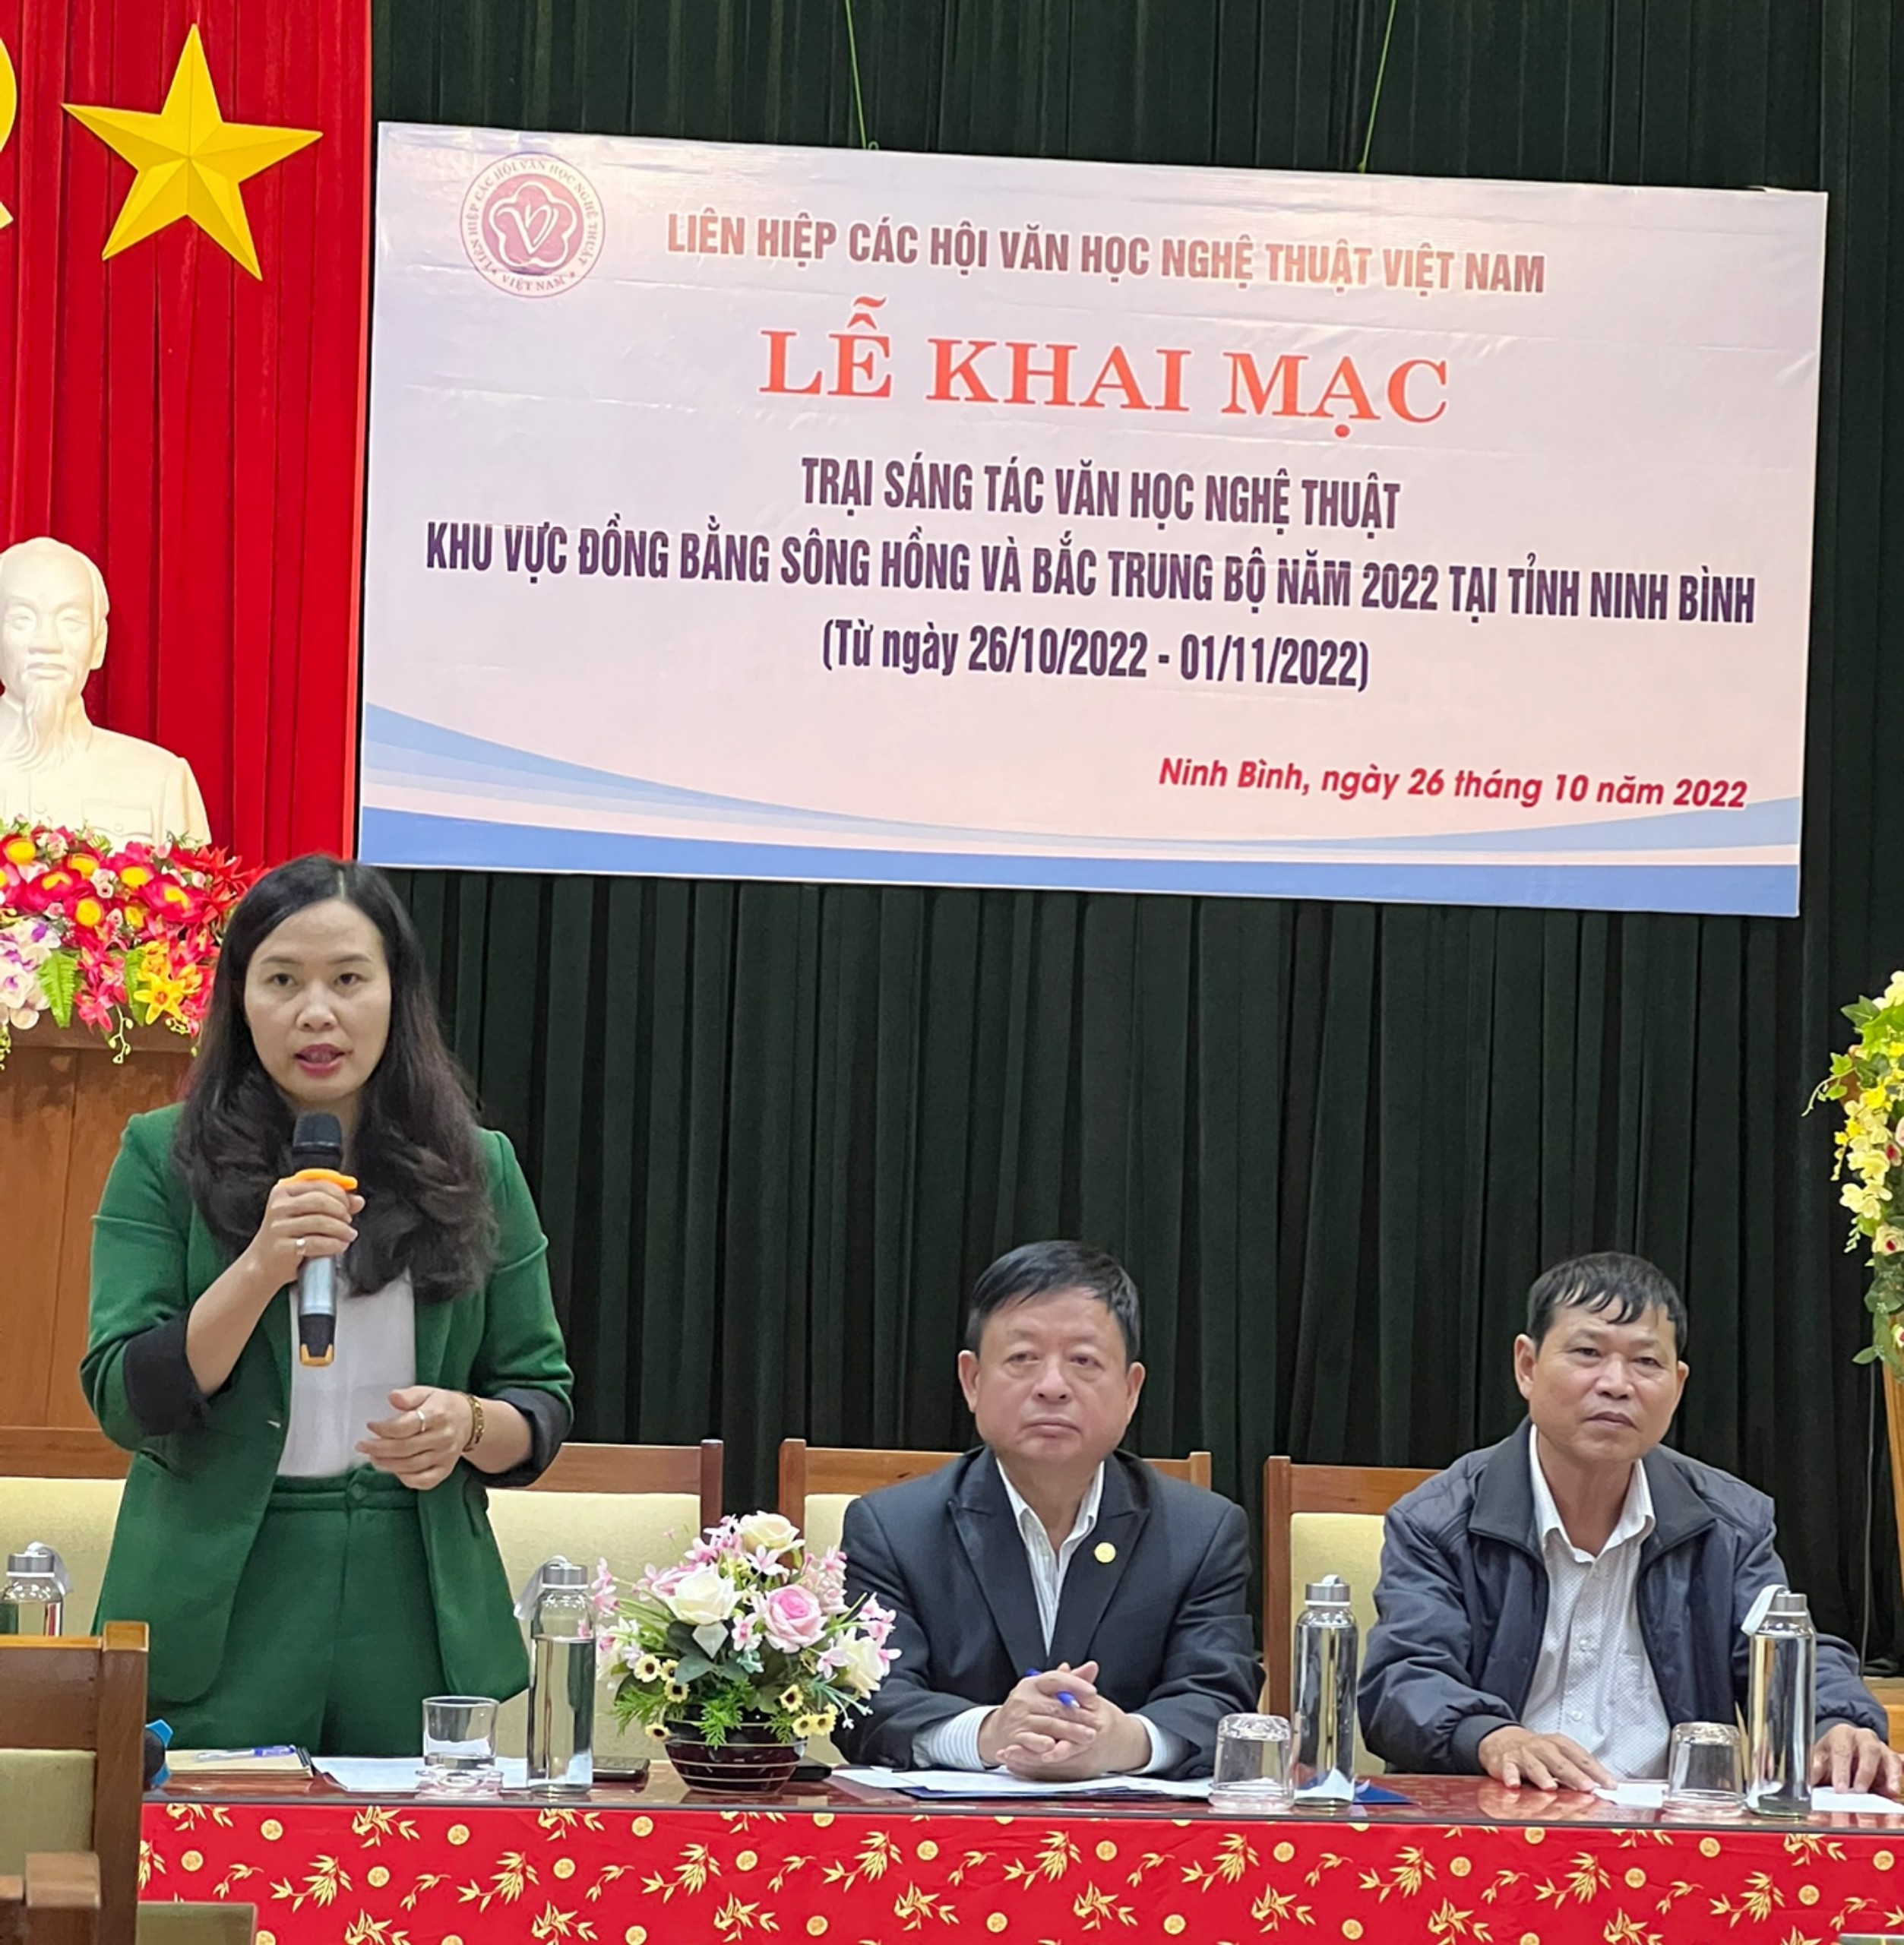 Lễ khai mạc Trại sáng tác tại Ninh Bình của Liên hiệp các Hội Văn học nghệ thuật Việt Nam - 3